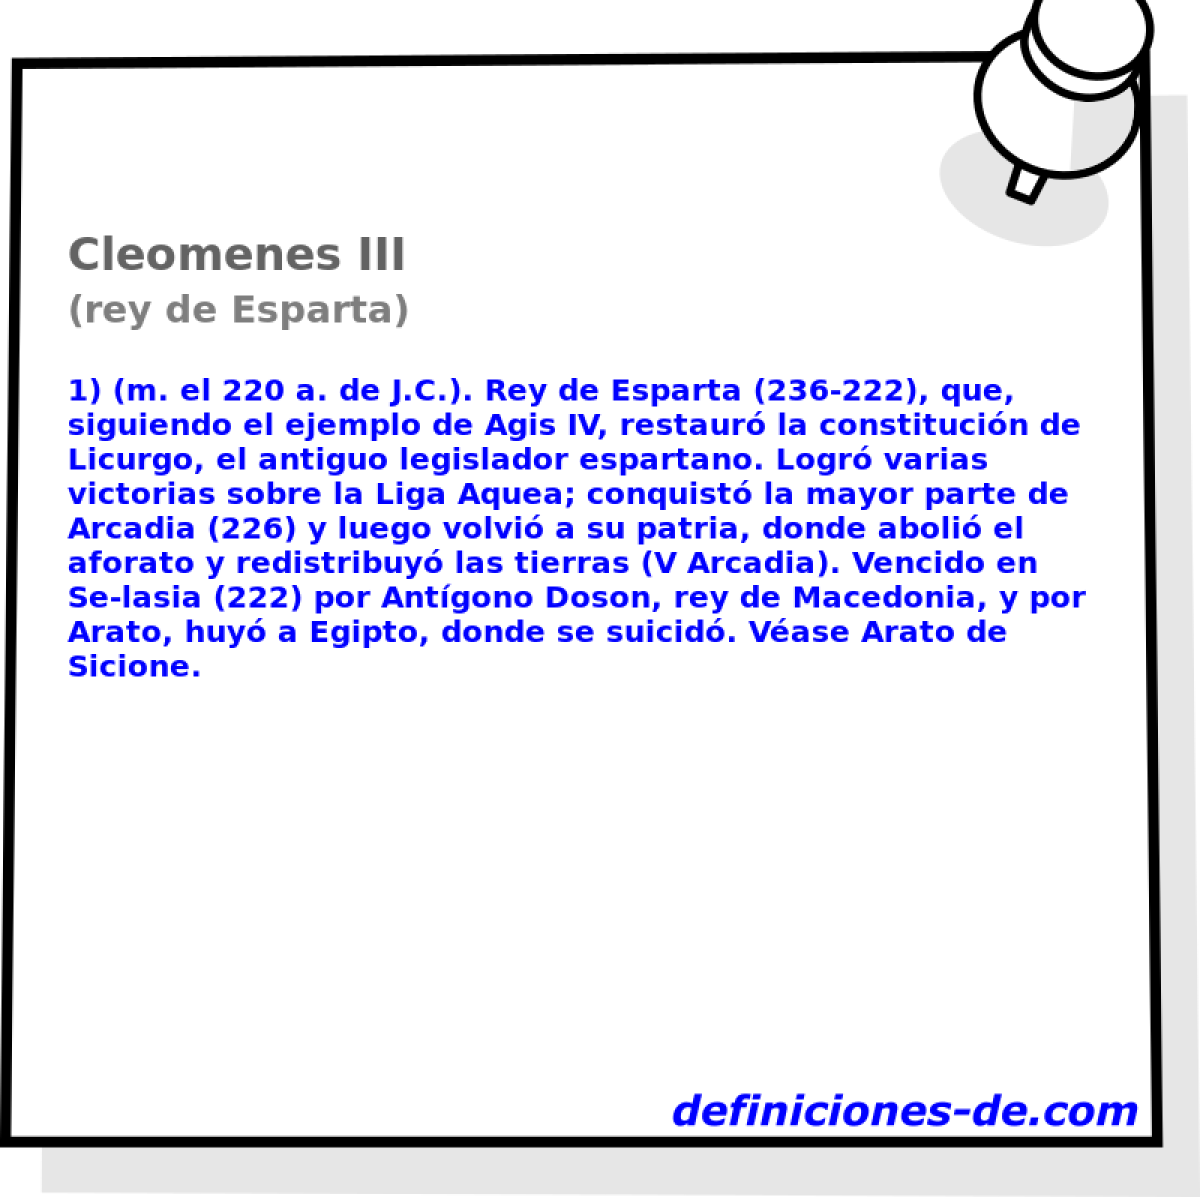 Cleomenes III (rey de Esparta)